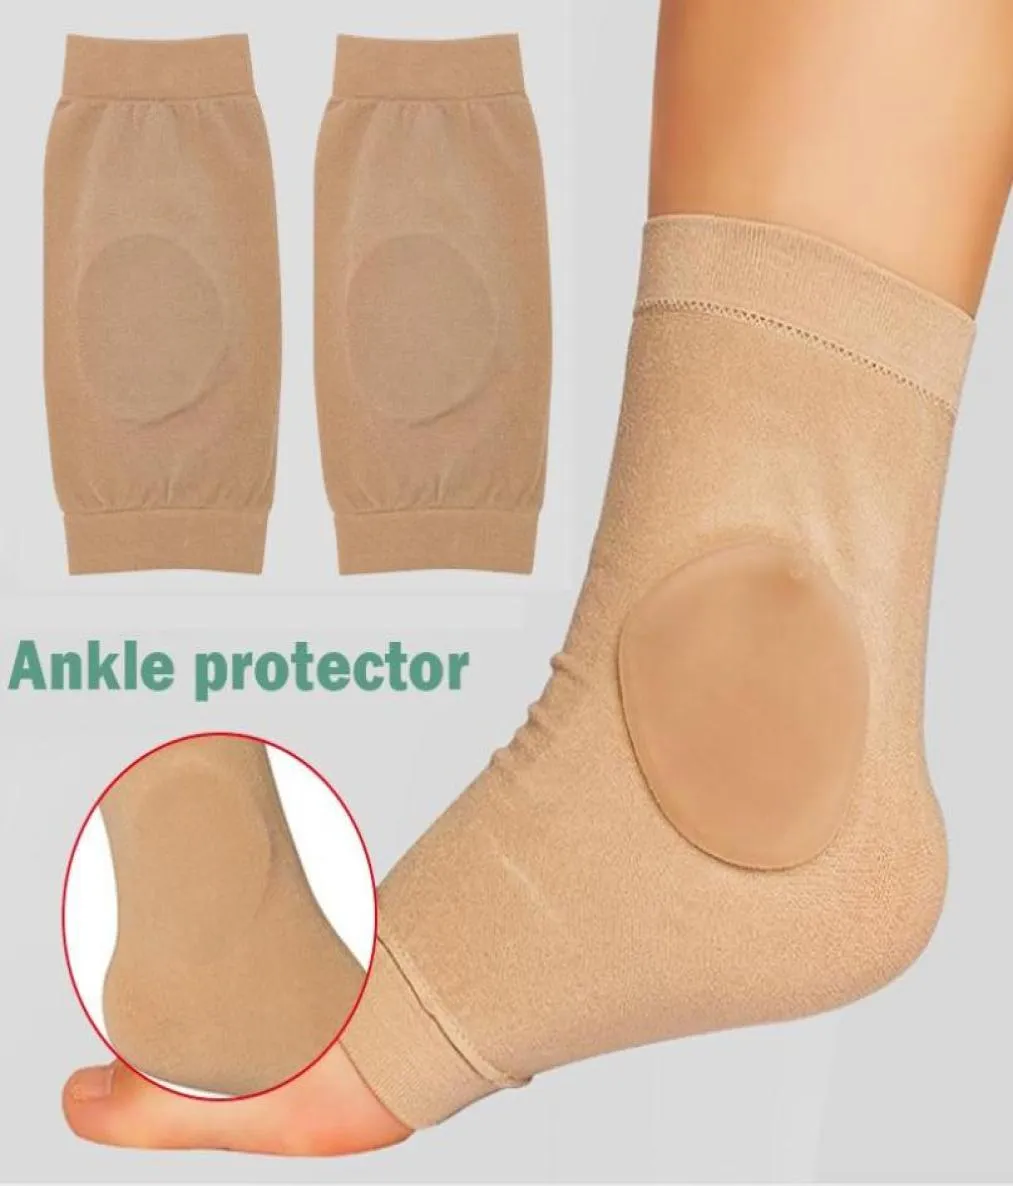 足首の骨保護靴下のペアbootsskatessplintsbraces ha support5733557用のジェルパッド付きマルレオラルスリーブ